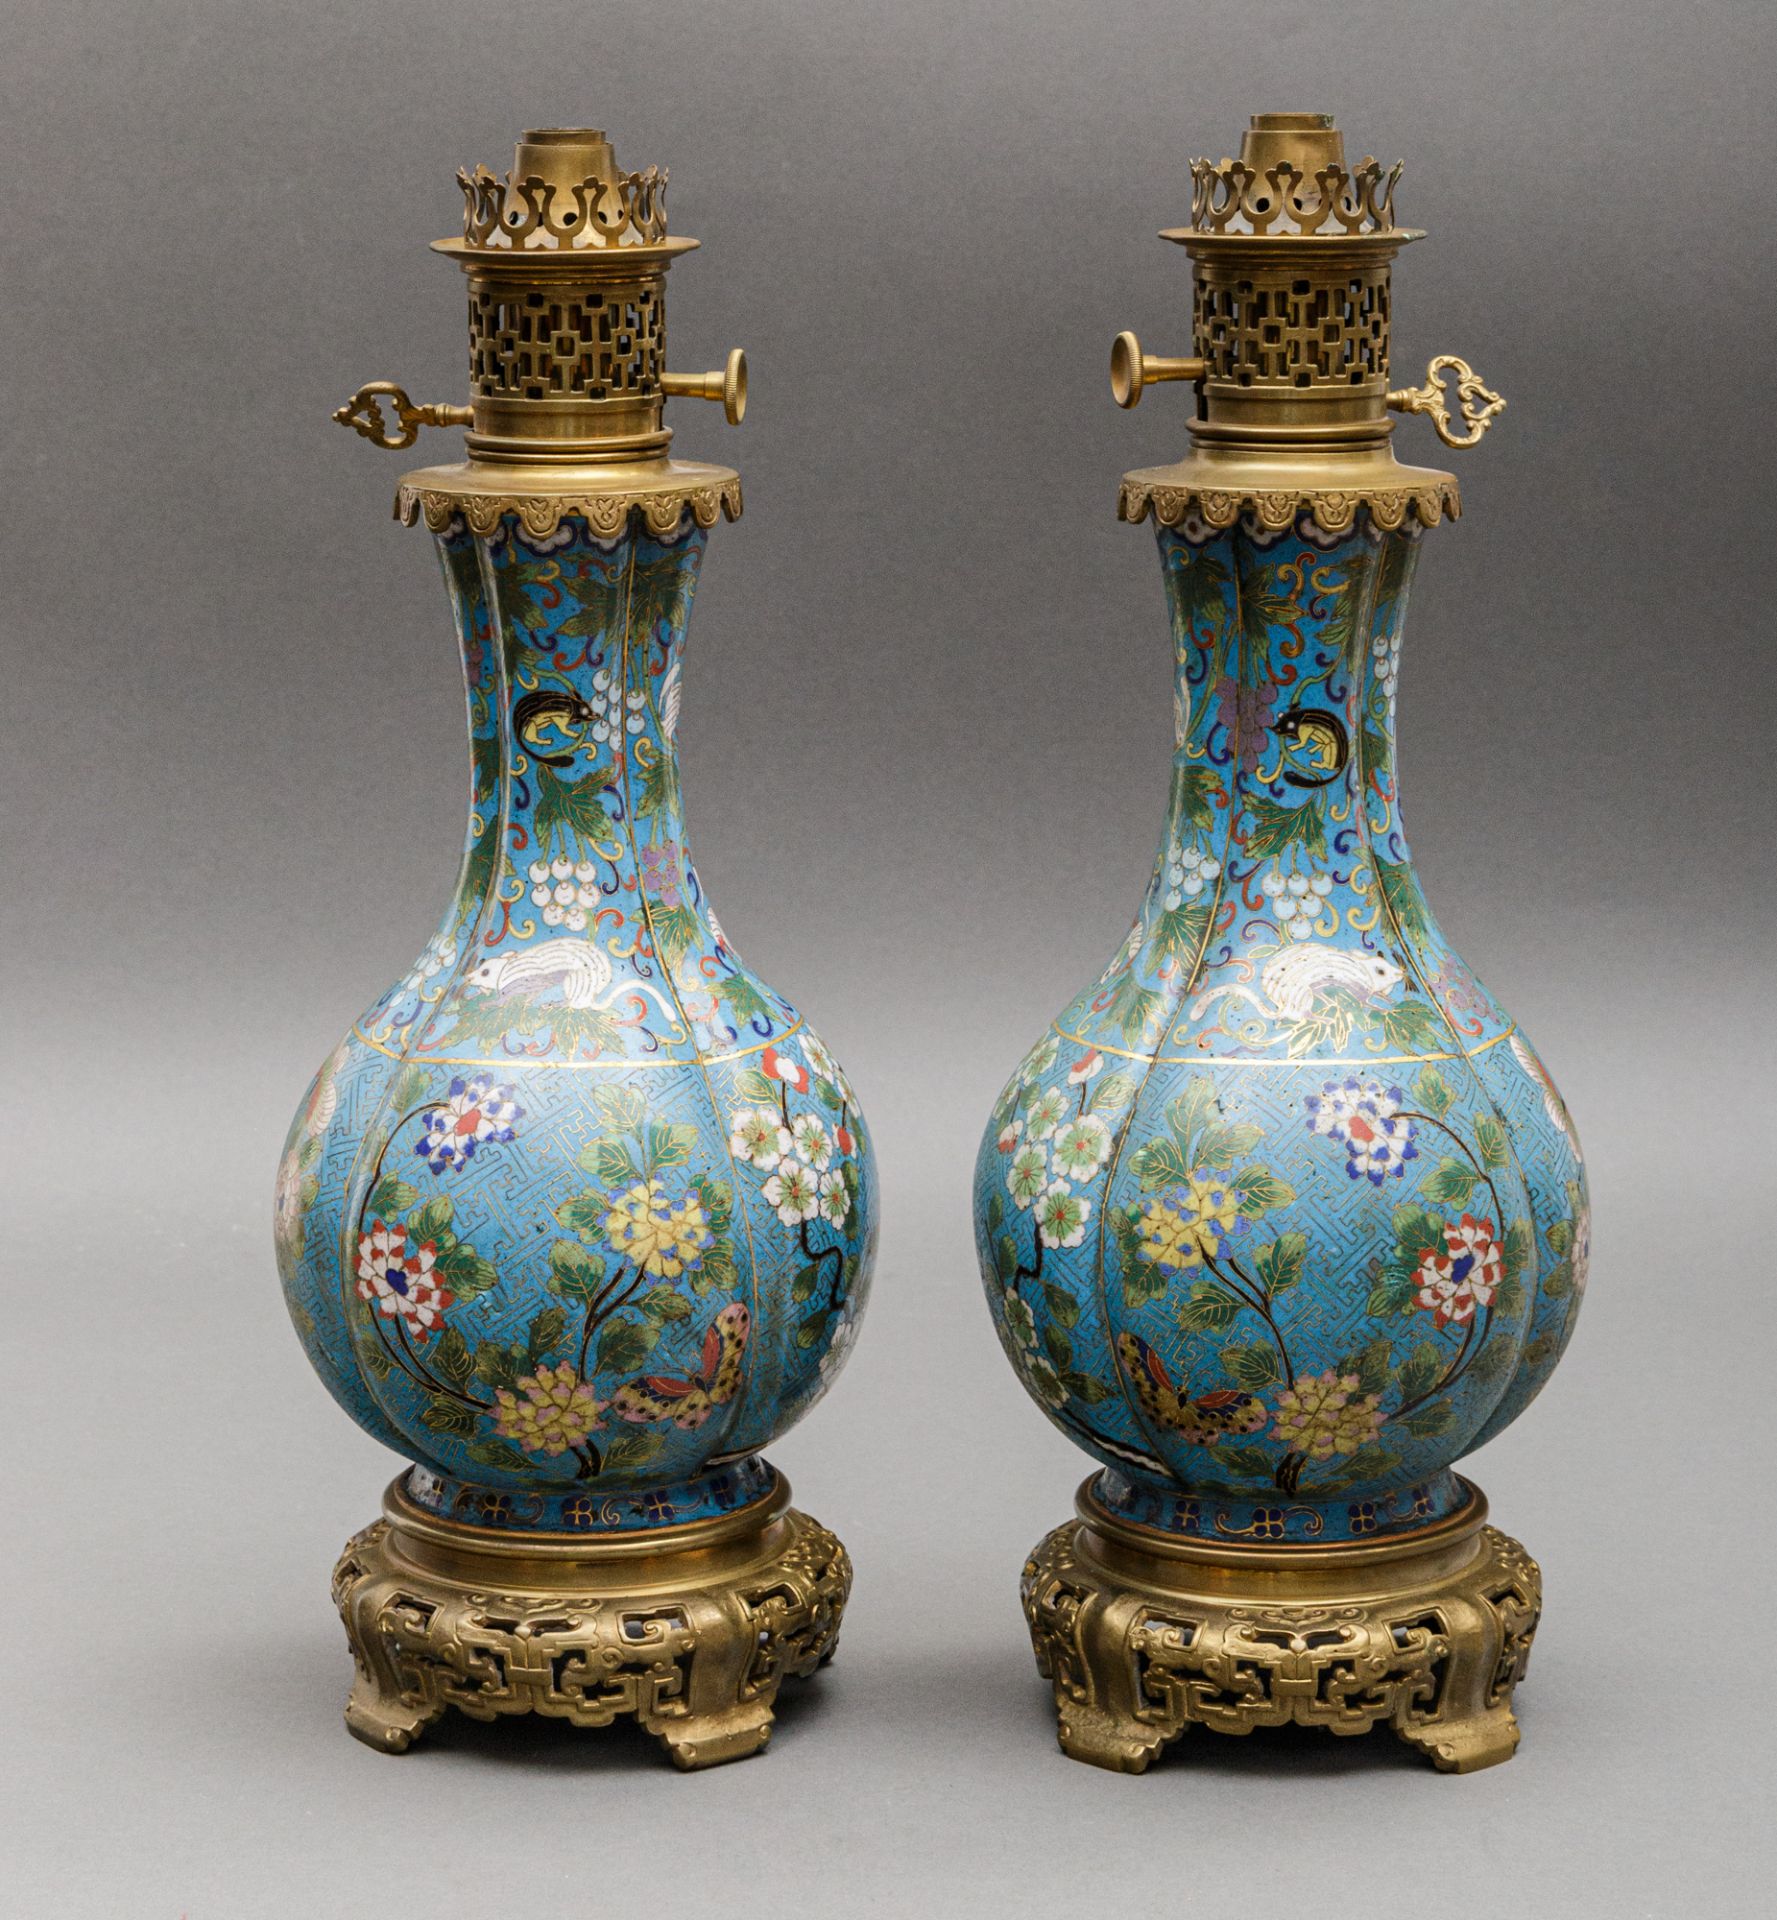 Paar Vasen-Lampen, China, um 1900. - Bild 3 aus 4